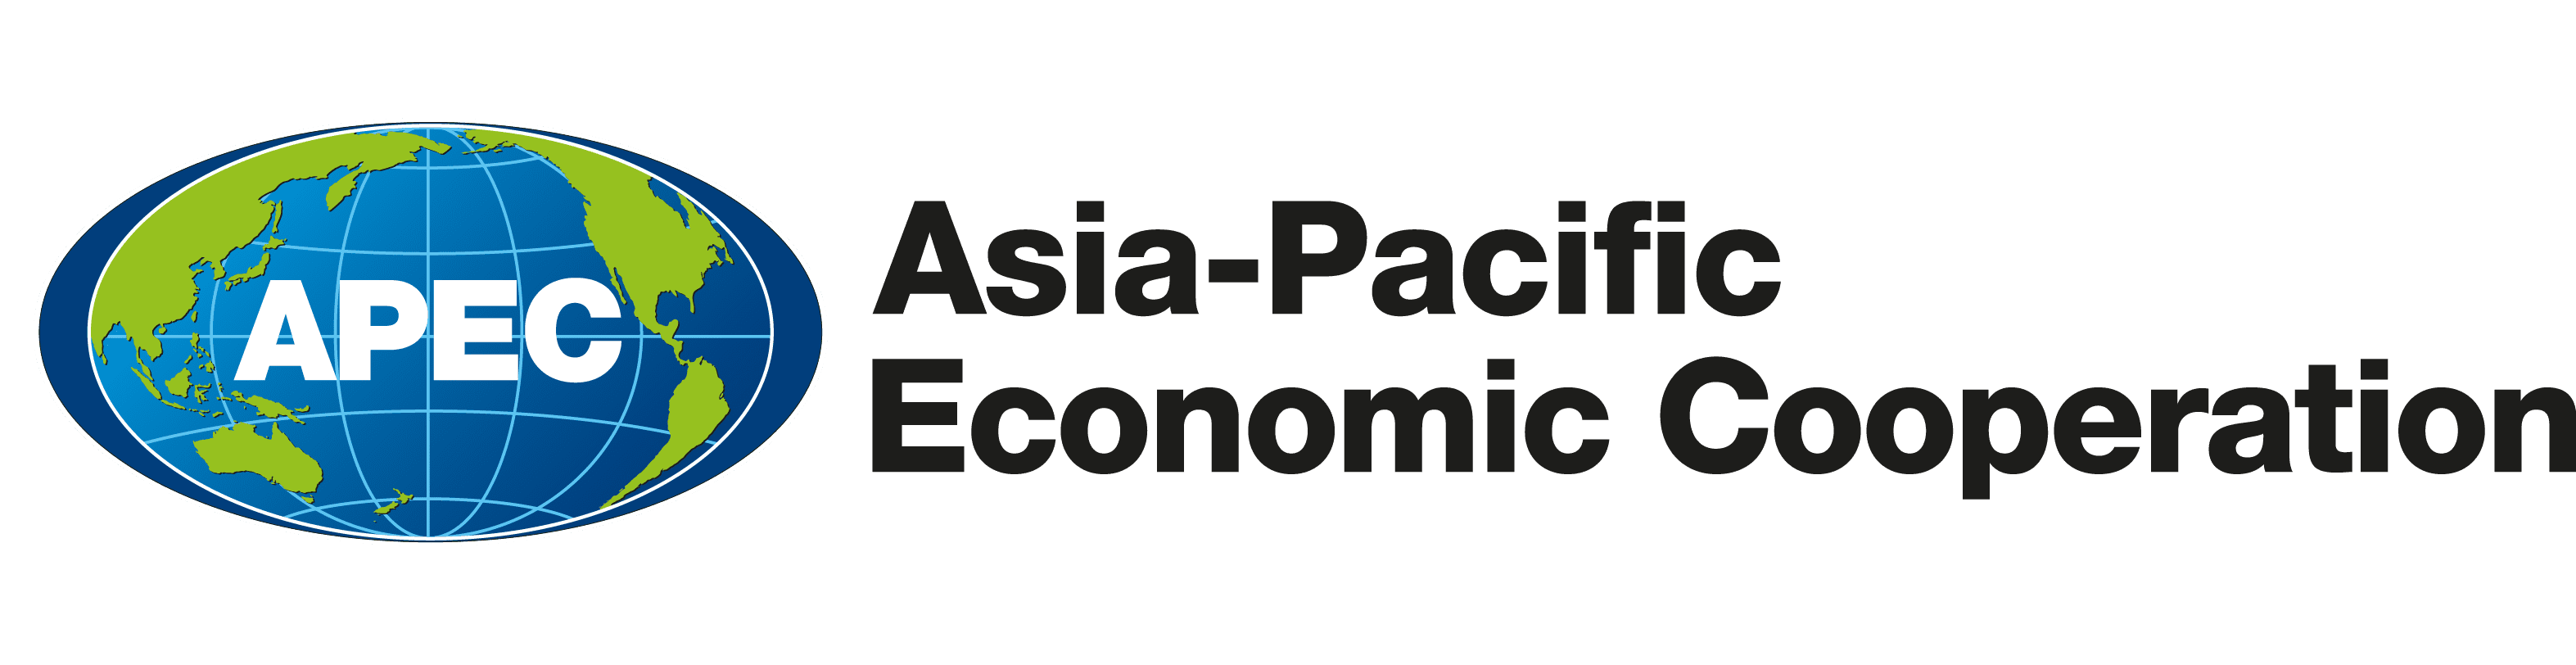 APEC Logo png